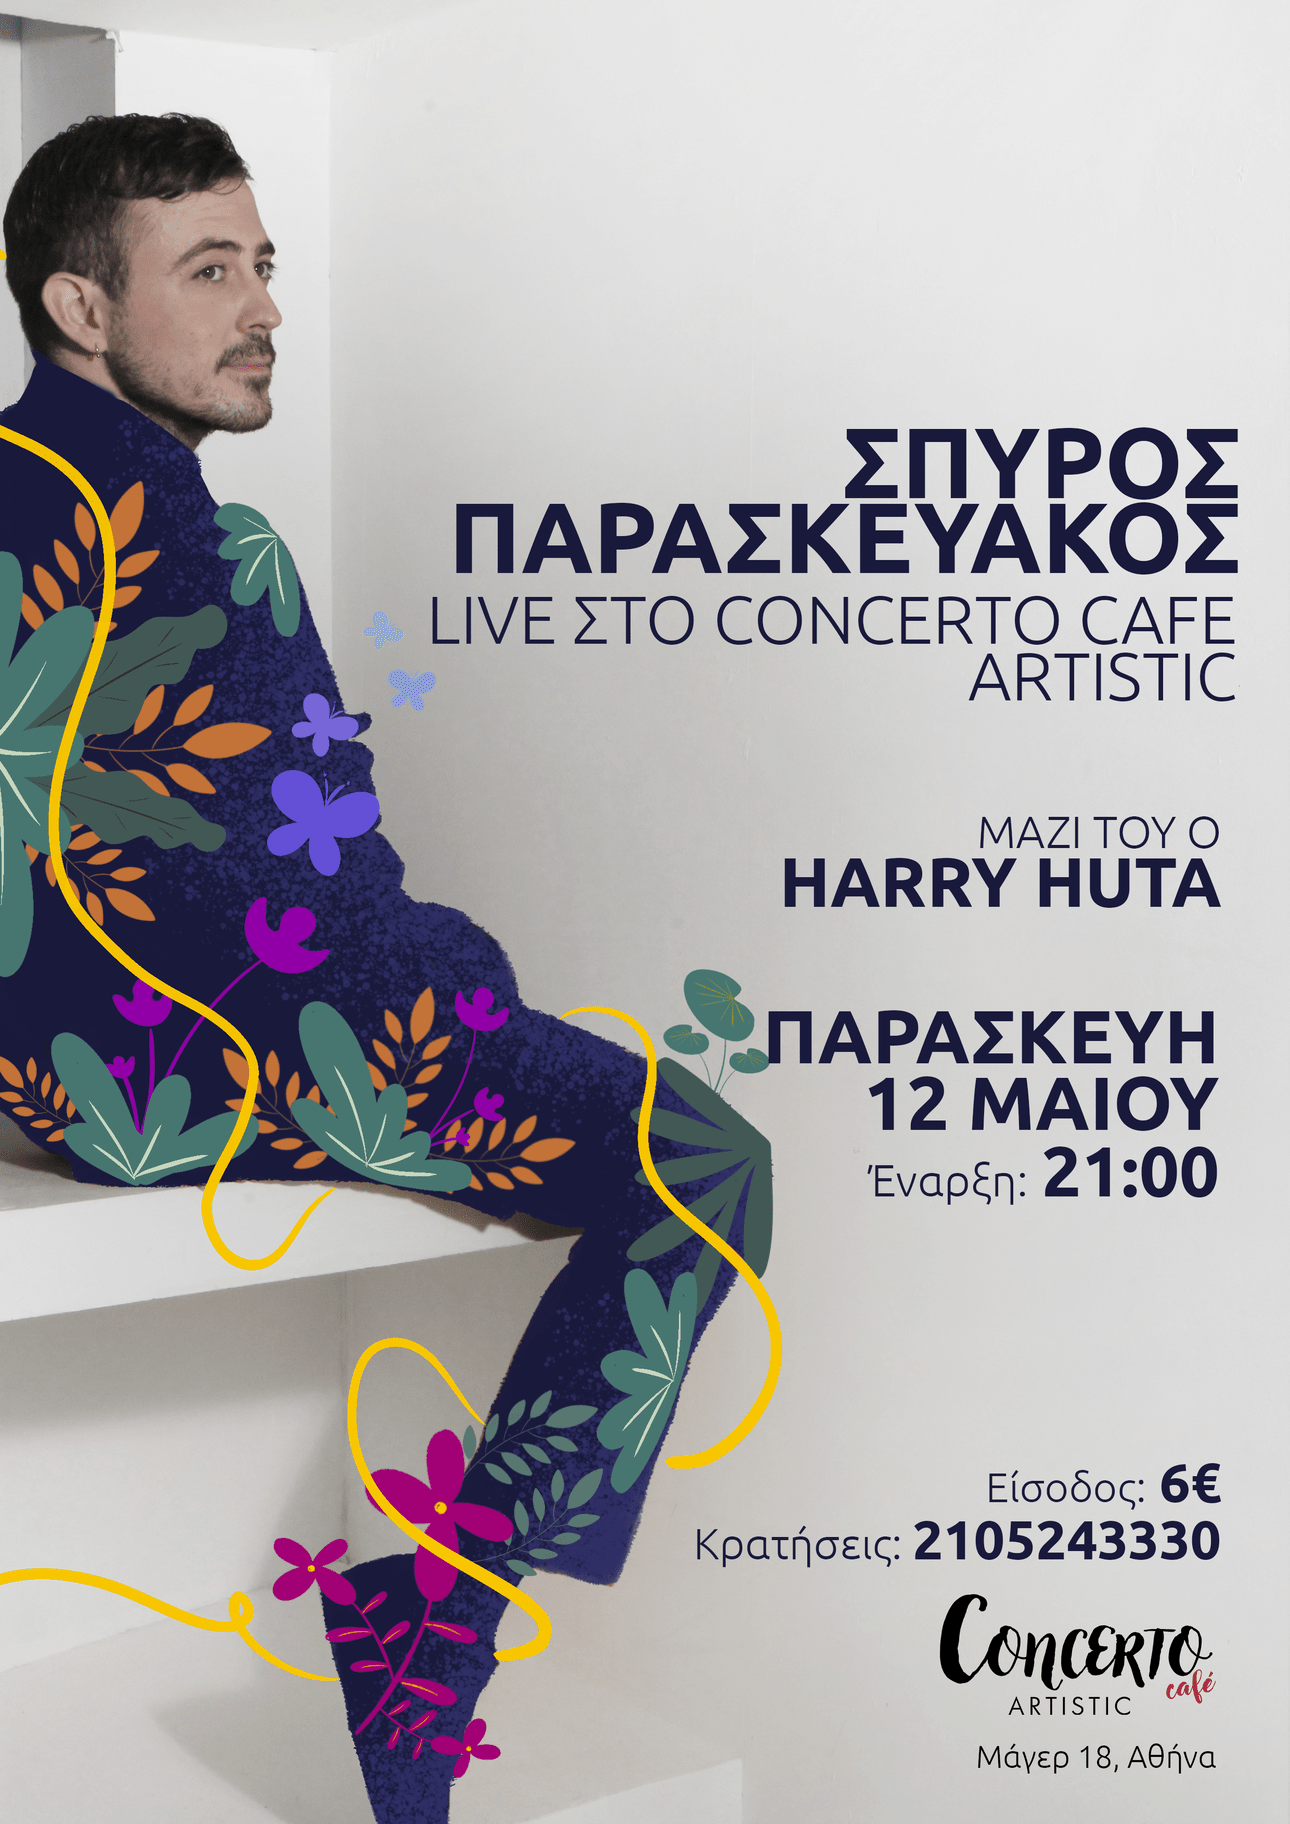 Ο Σπύρος Παρασκευάκος στο Concert Artistic Café, την Παρασκευή 12 Μαΐου - Μαζί του ο Harry Huta